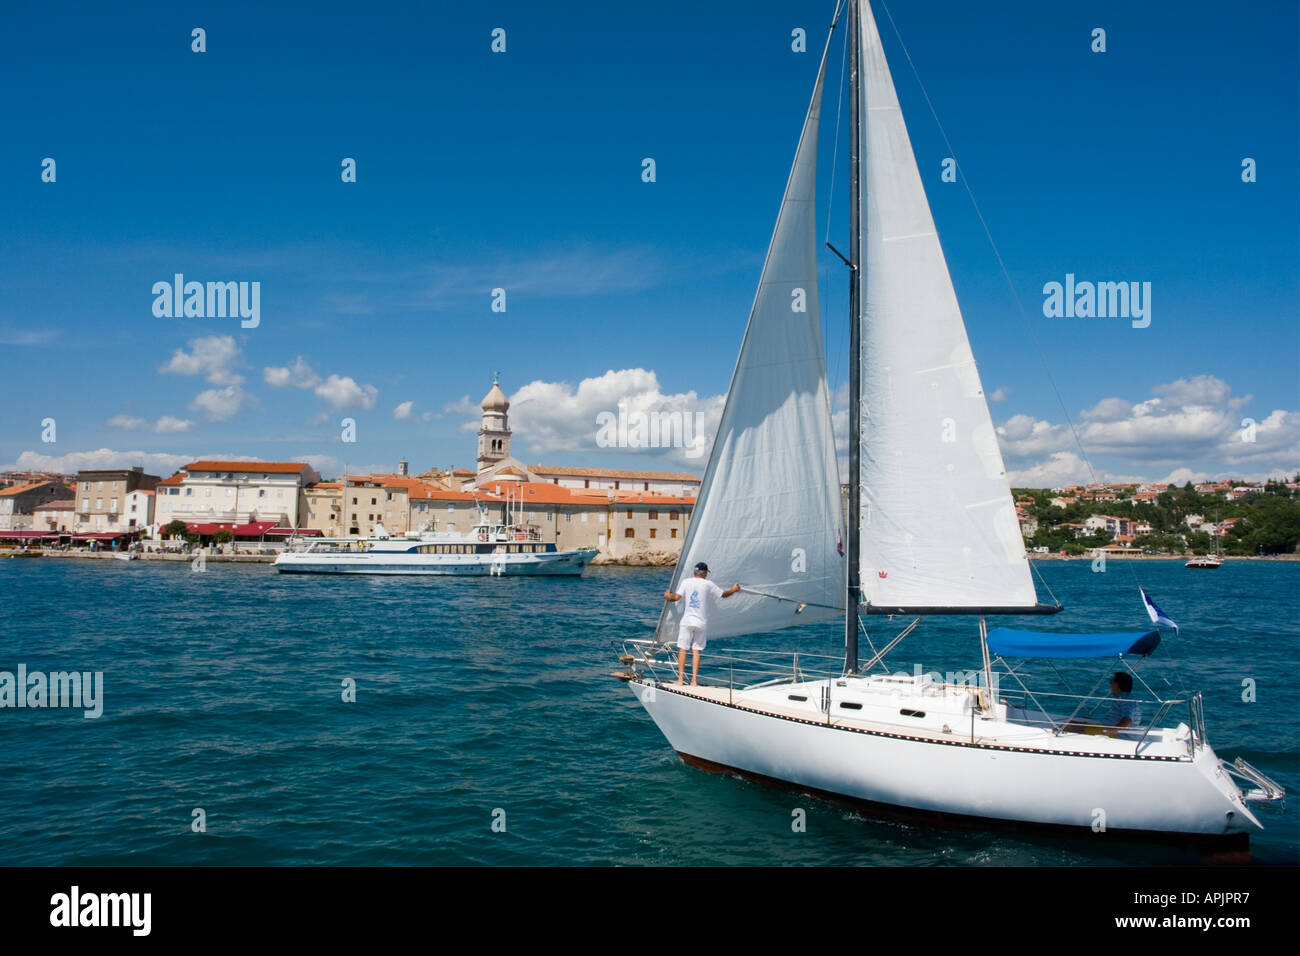 Sail boat entering port, Krk on Krk island in Croatia, Europe Stock Photo